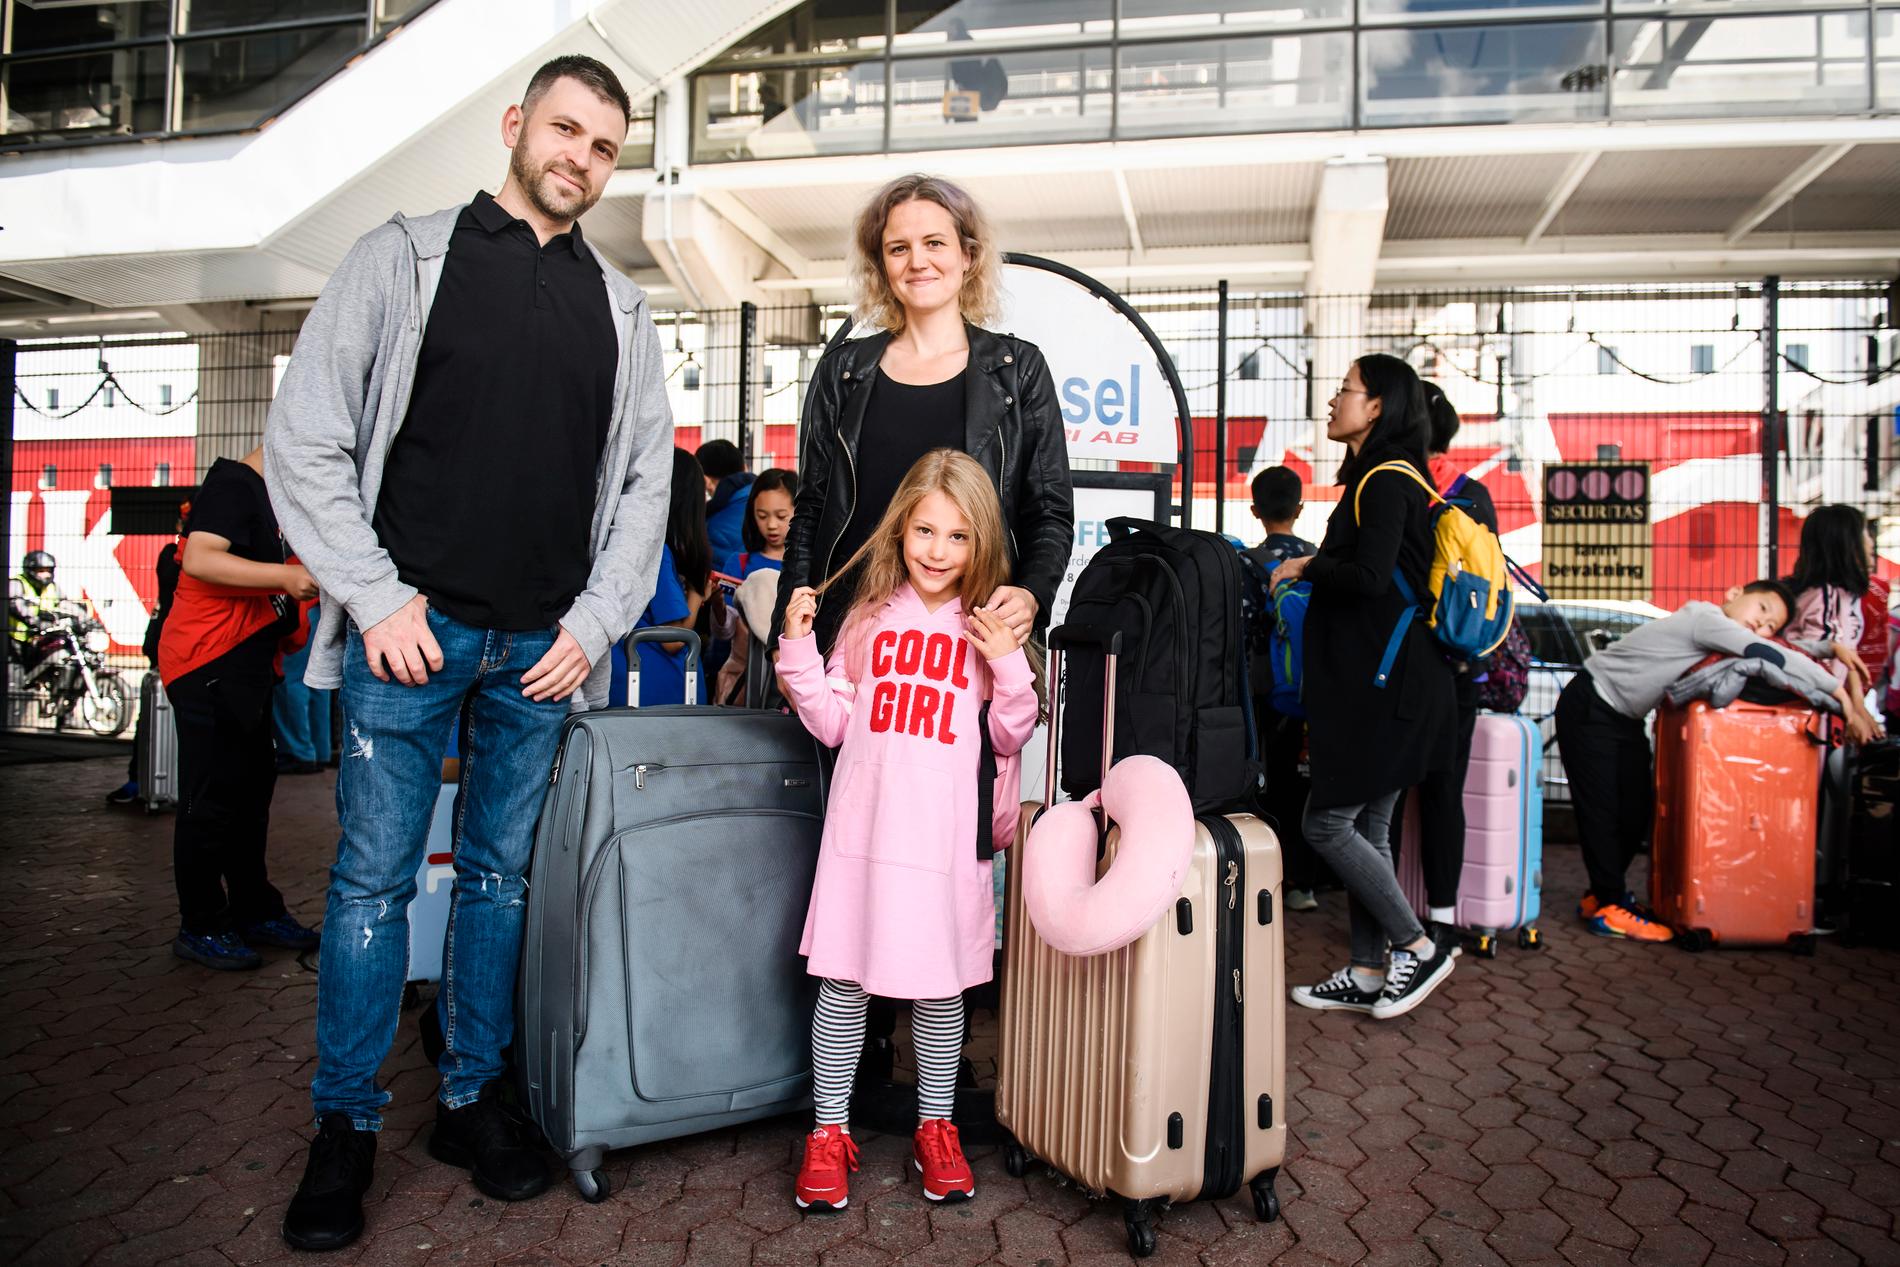 Familjen Galperin, Max, Tsenia och dottern Jana är på besök från Ryssland. "Vi är här på semester och hälsar på min frus släkt, men för oss är det inte billigare här jämfört med Ryssland", säger Max.